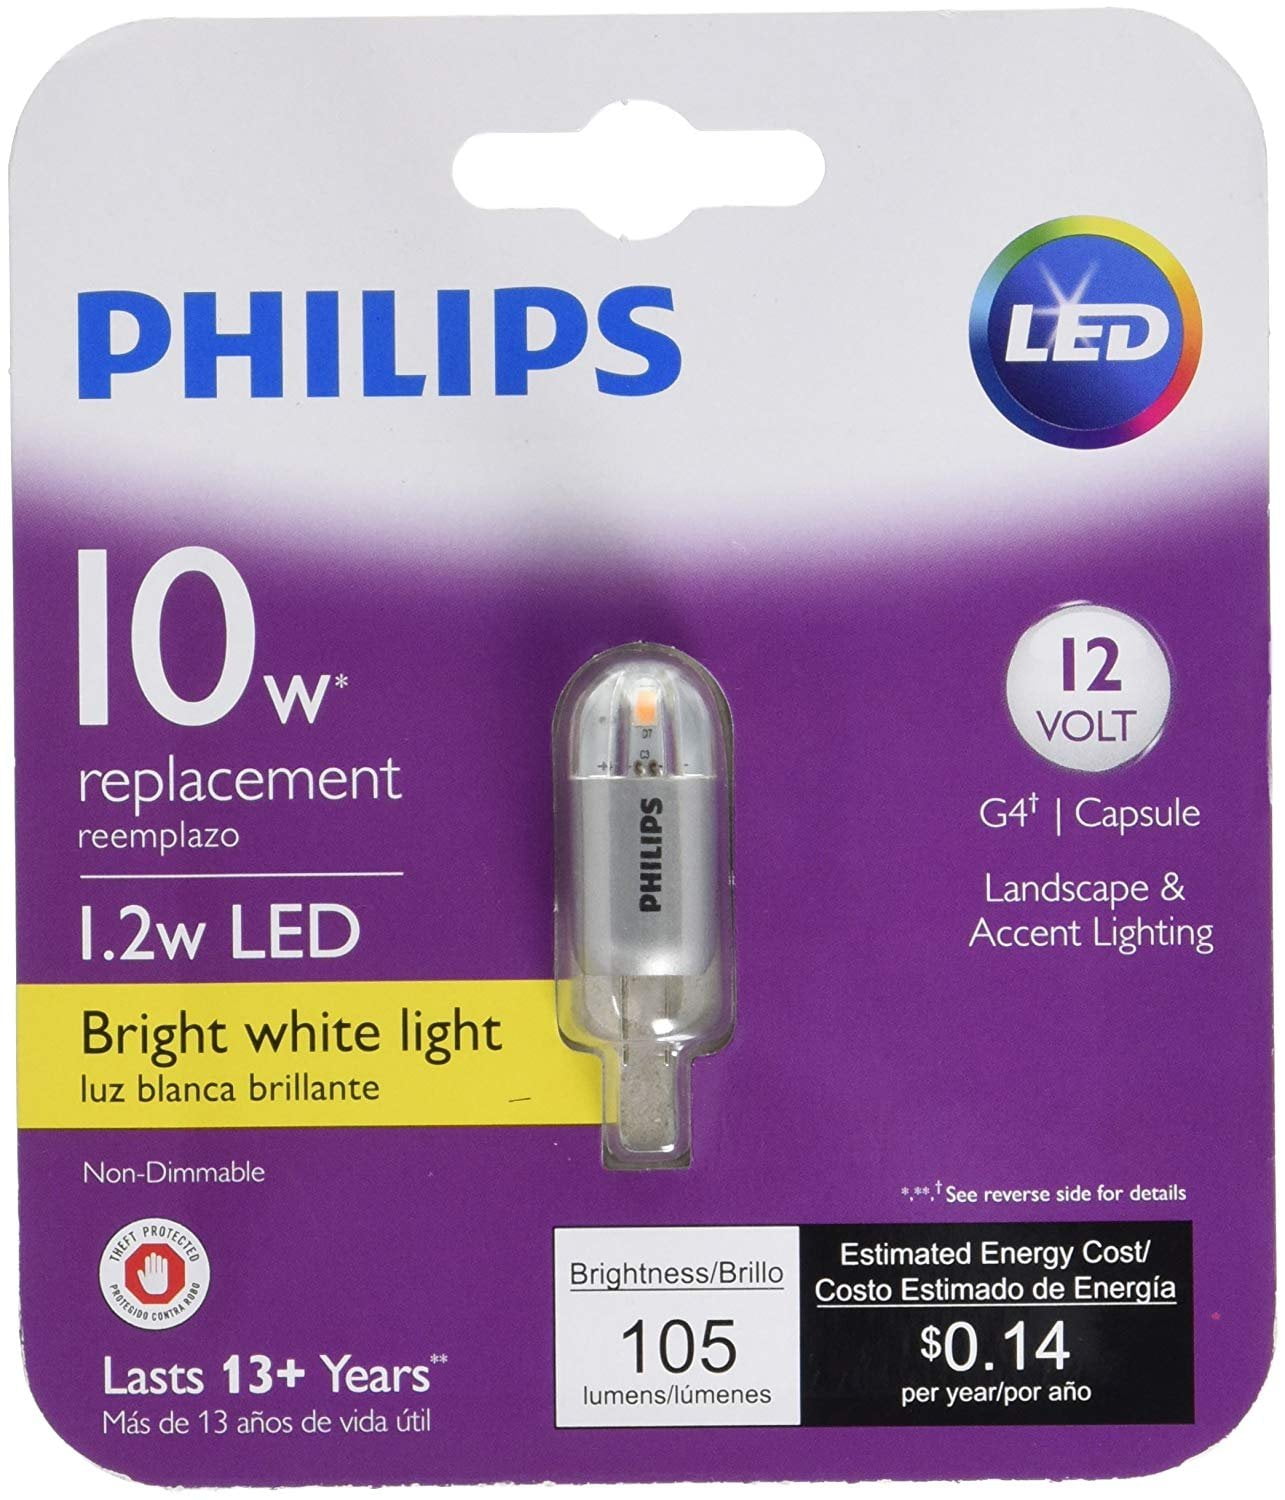 458497 10W Equivalent LED 12V Capsule Light Bulb - Walmart.com